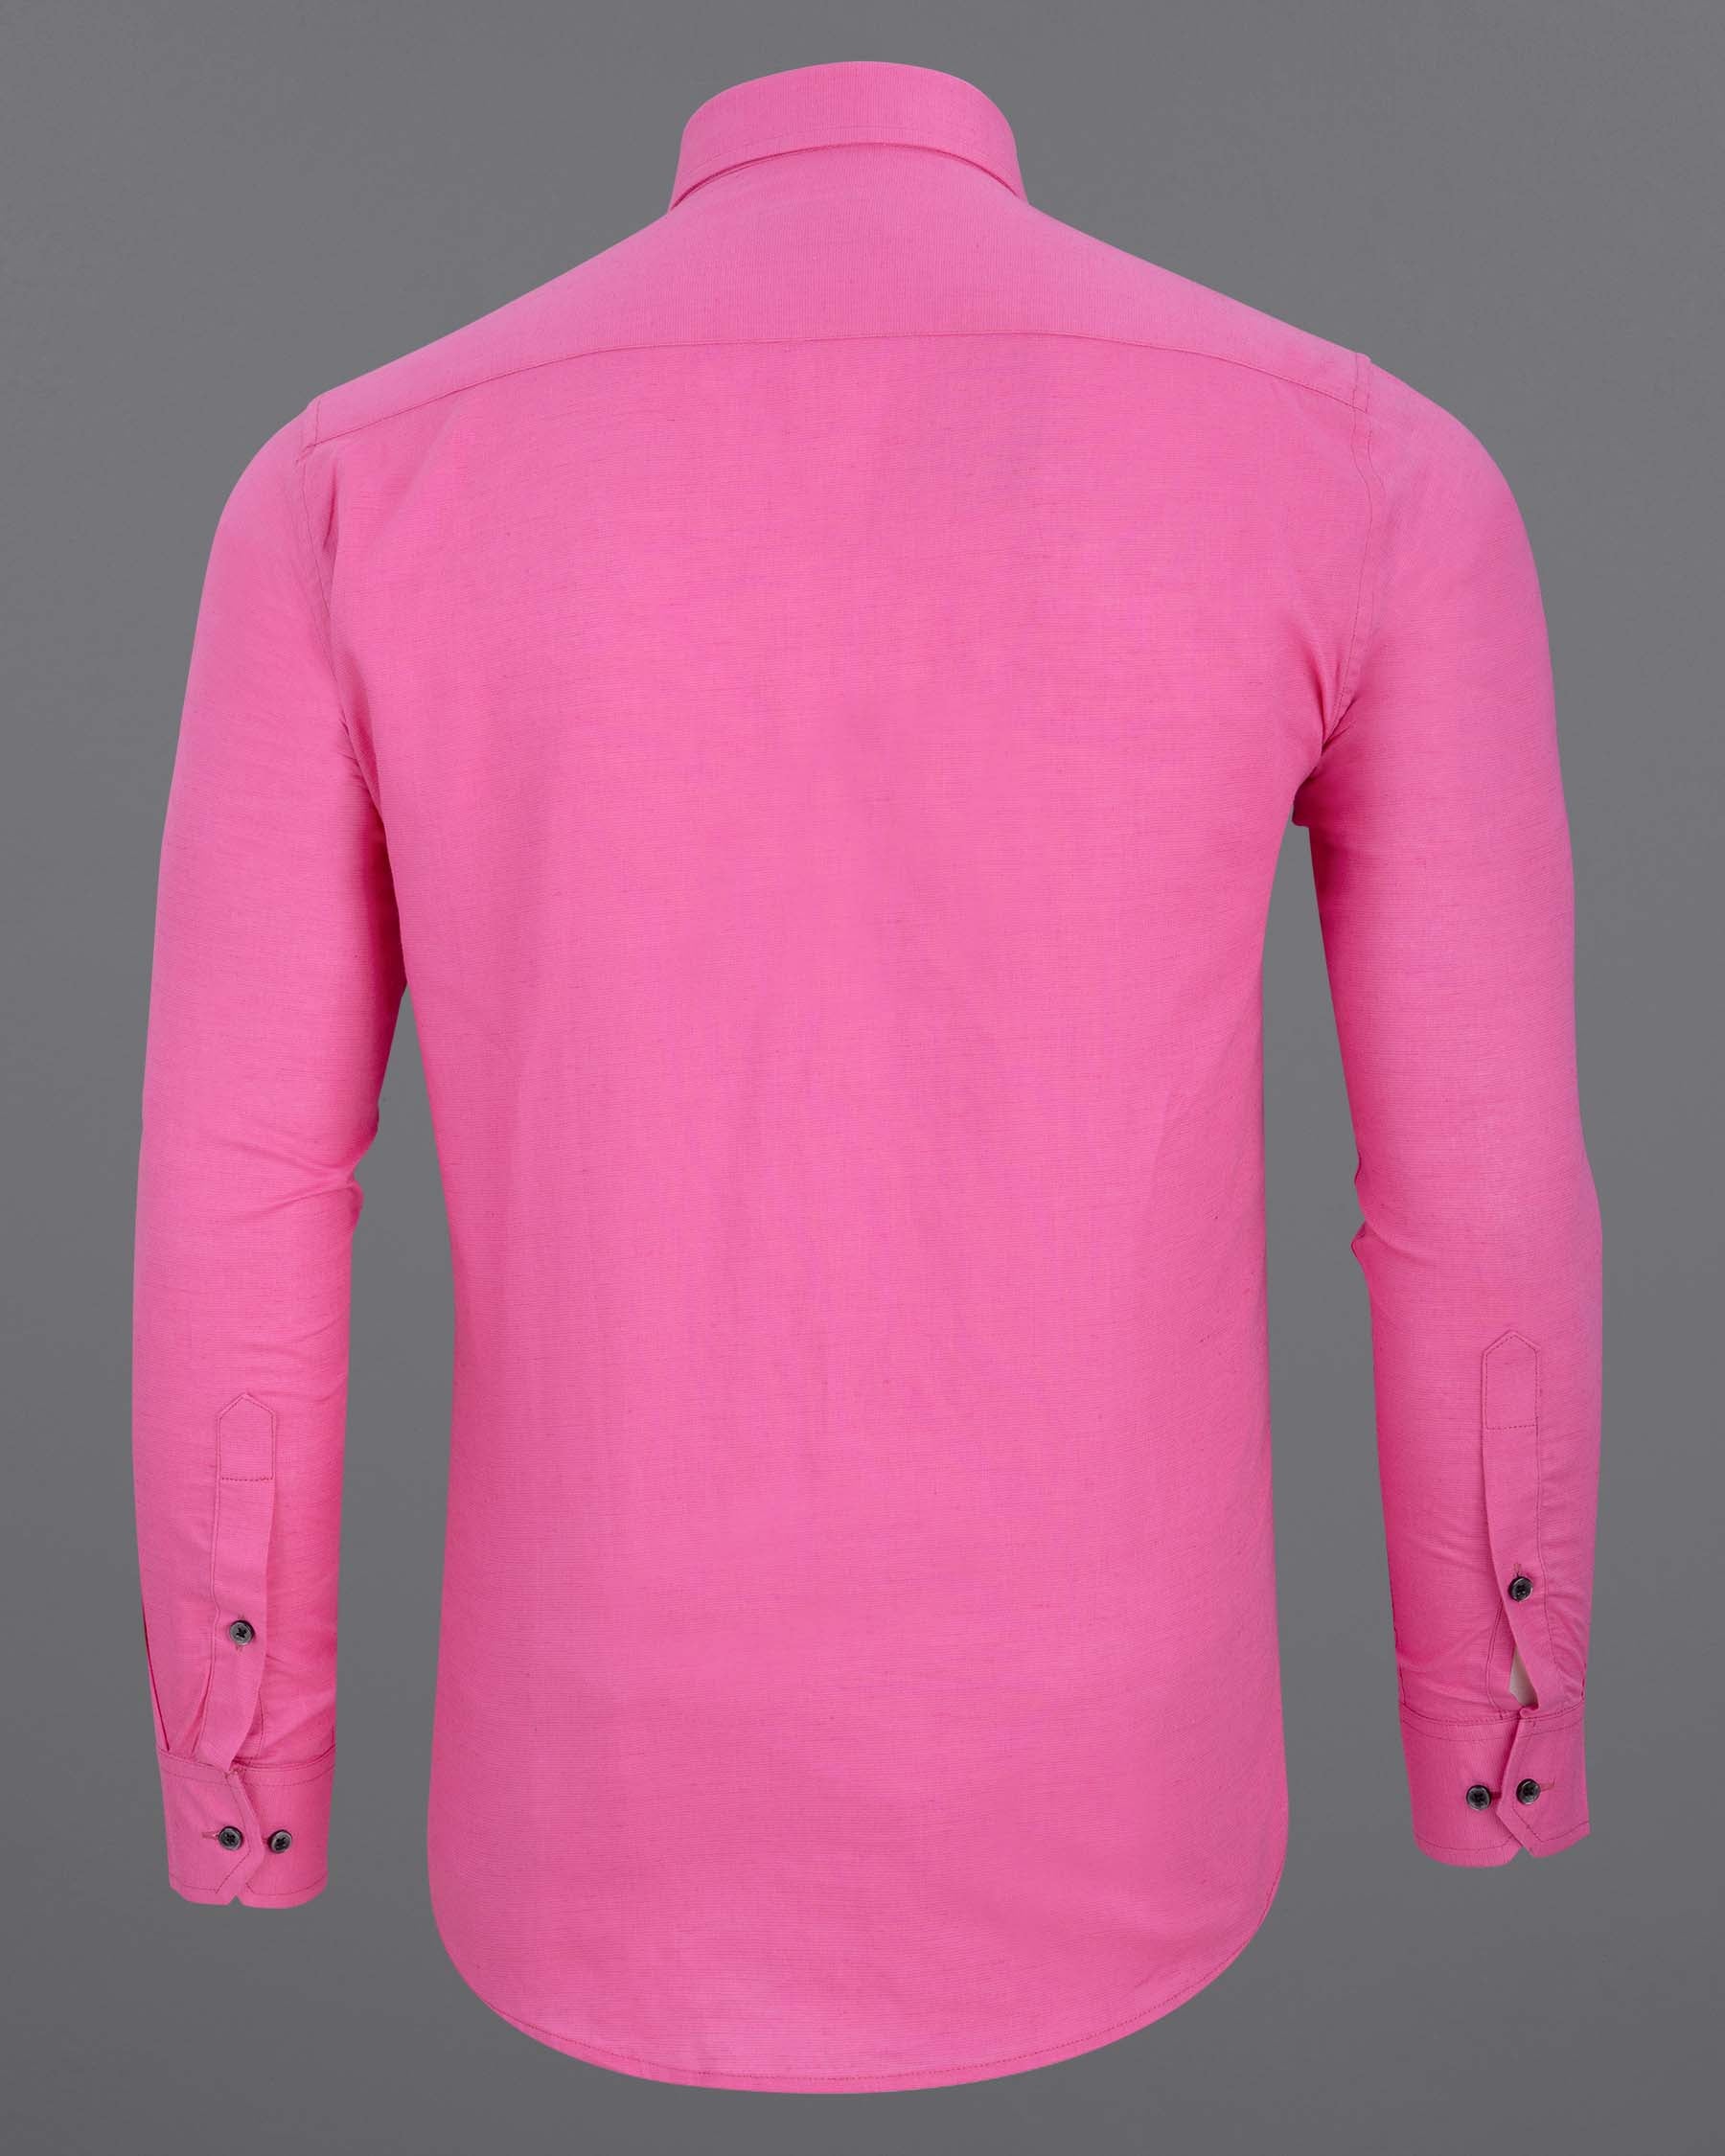 Deep Blush Pink Luxurious Linen Shirt 6177-BLK-38, 6177-BLK-H-38, 6177-BLK-39, 6177-BLK-H-39, 6177-BLK-40, 6177-BLK-H-40, 6177-BLK-42, 6177-BLK-H-42, 6177-BLK-44, 6177-BLK-H-44, 6177-BLK-46, 6177-BLK-H-46, 6177-BLK-48, 6177-BLK-H-48, 6177-BLK-50, 6177-BLK-H-50, 6177-BLK-52, 6177-BLK-H-52